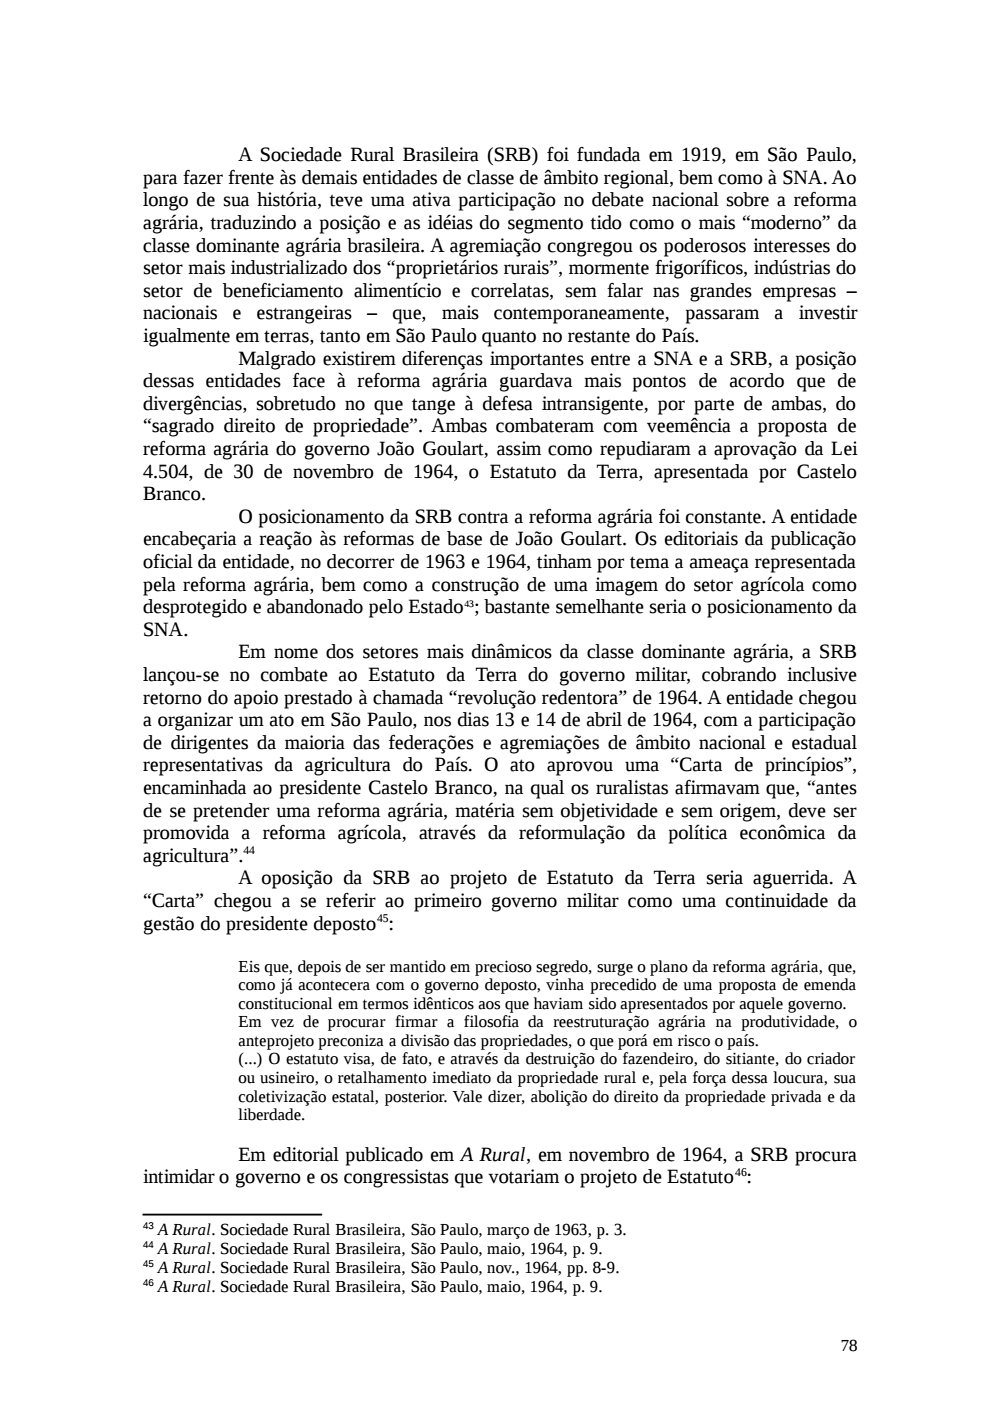 Page 78 from Relatório final da comissão